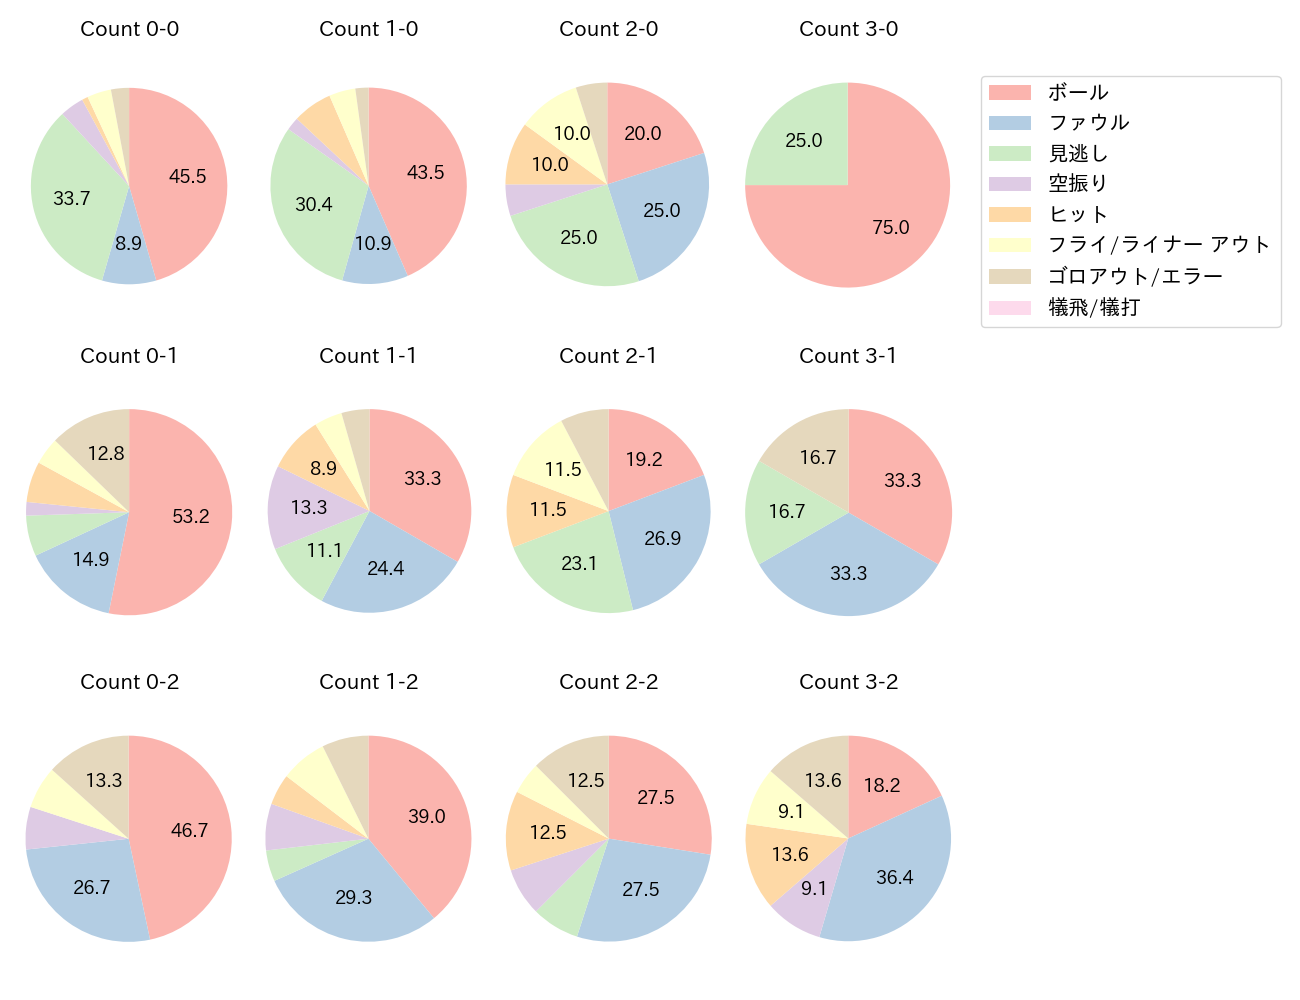 佐野 恵太の球数分布(2023年9月)